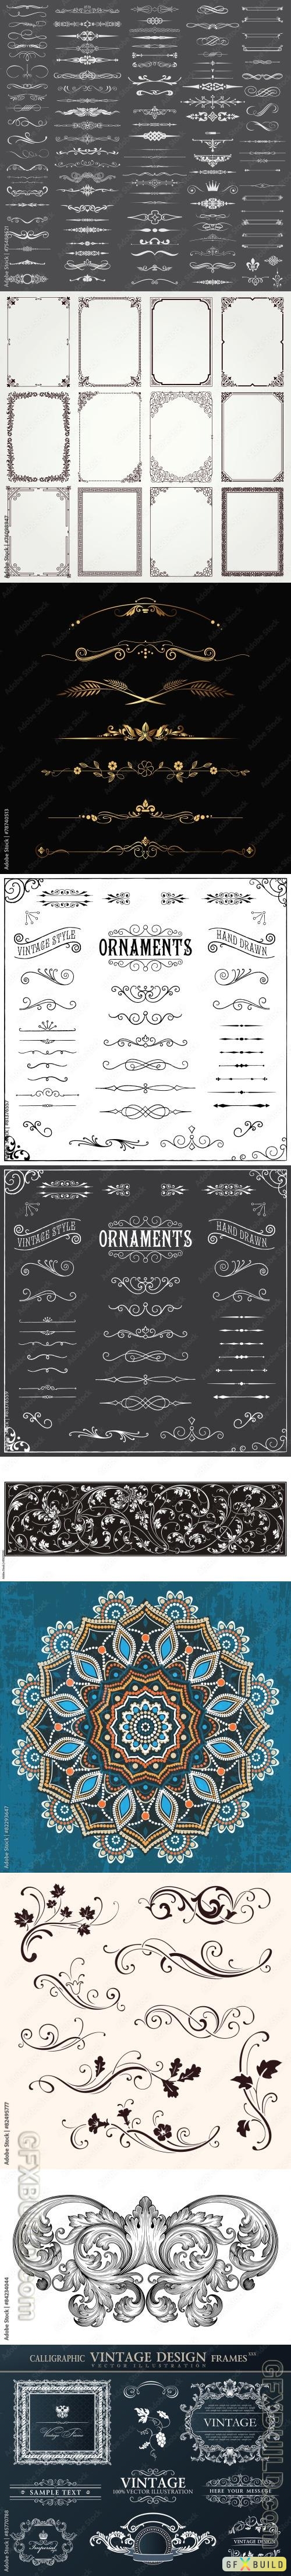 10 Ornament Vector Elements Set 3